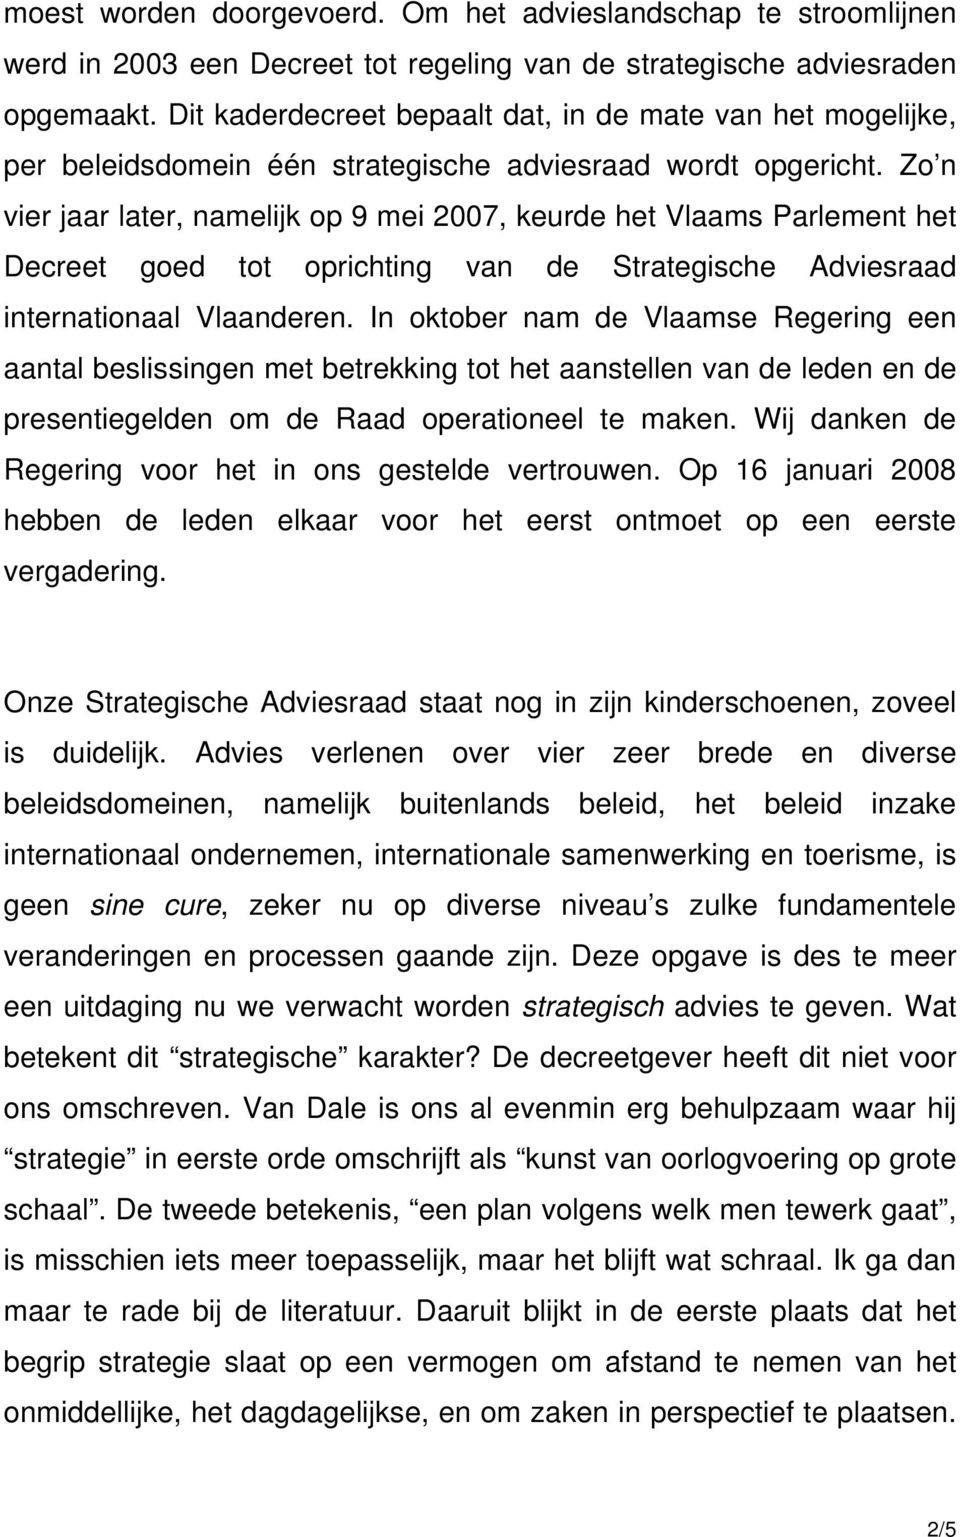 Zo n vier jaar later, namelijk op 9 mei 2007, keurde het Vlaams Parlement het Decreet goed tot oprichting van de Strategische Adviesraad internationaal Vlaanderen.